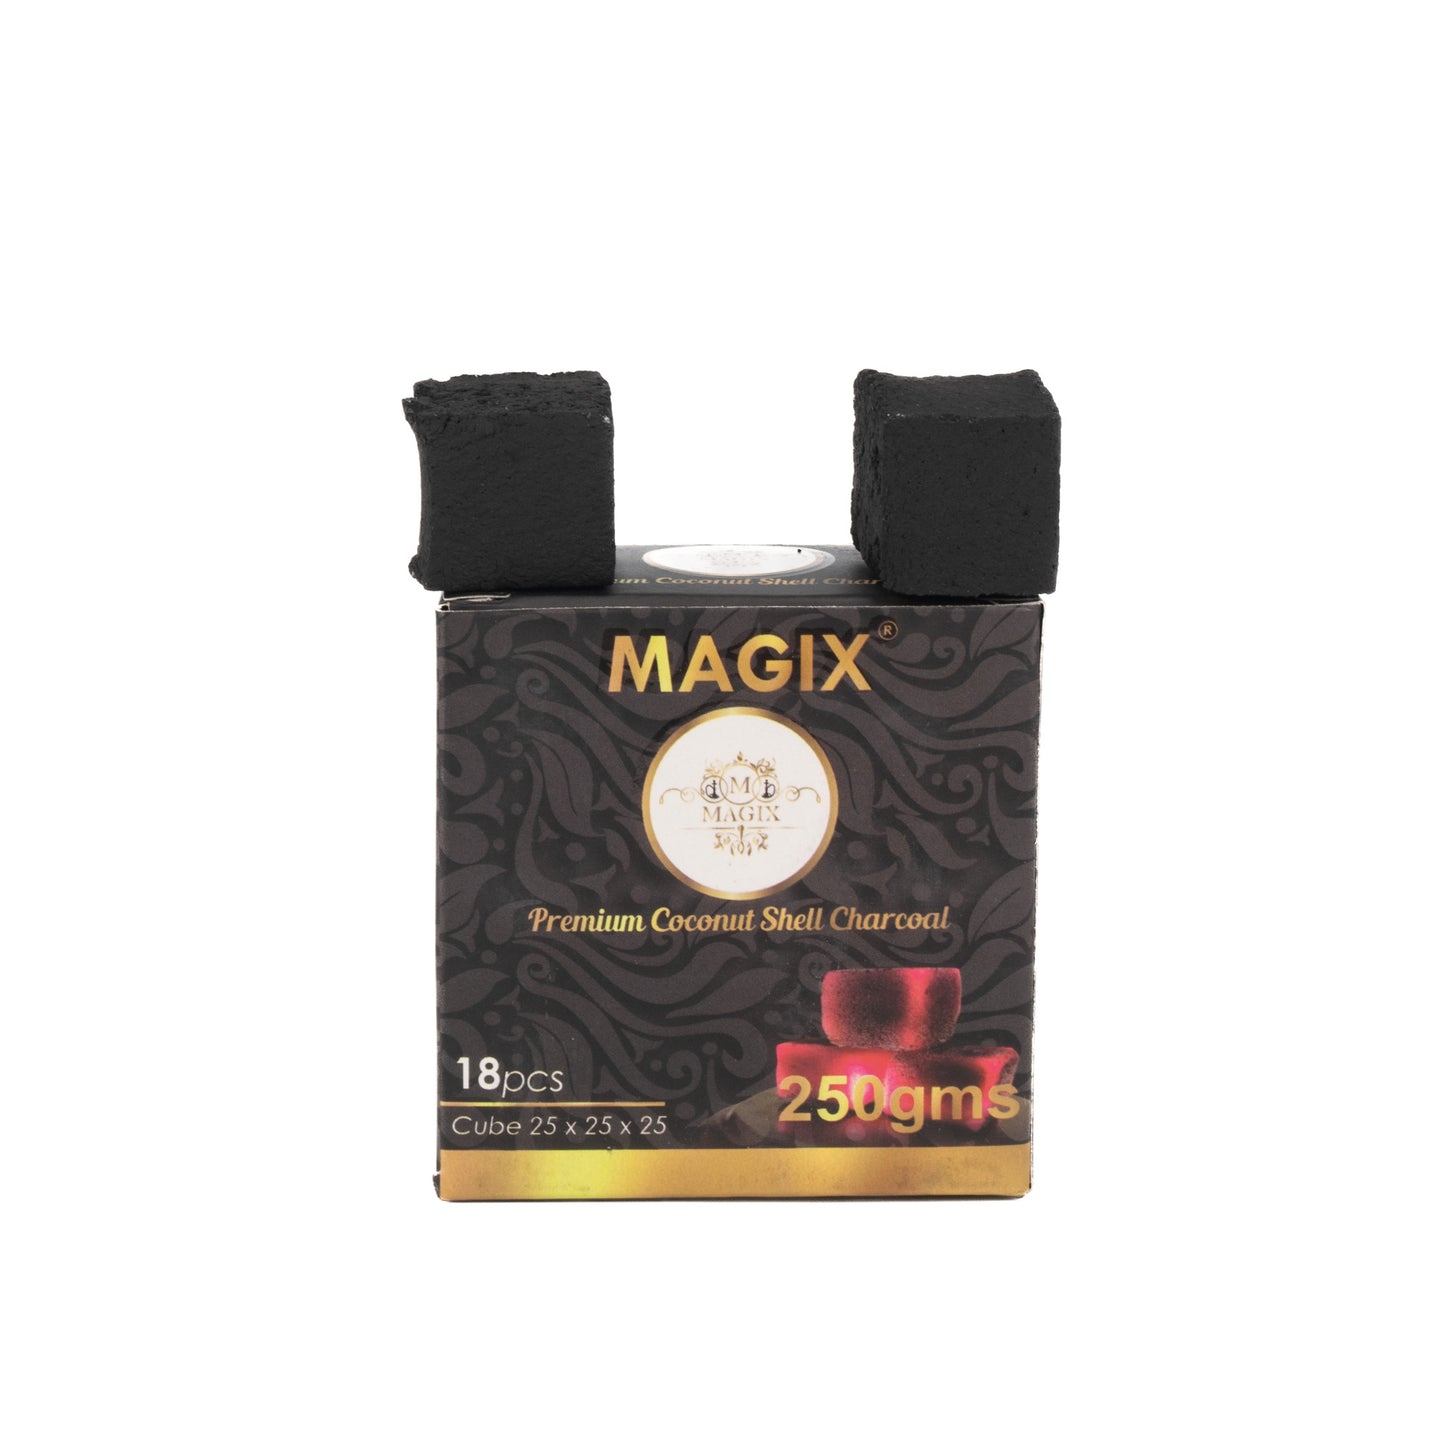 Magix Coconut Coal for Hookah 250g Pack - 18pcs